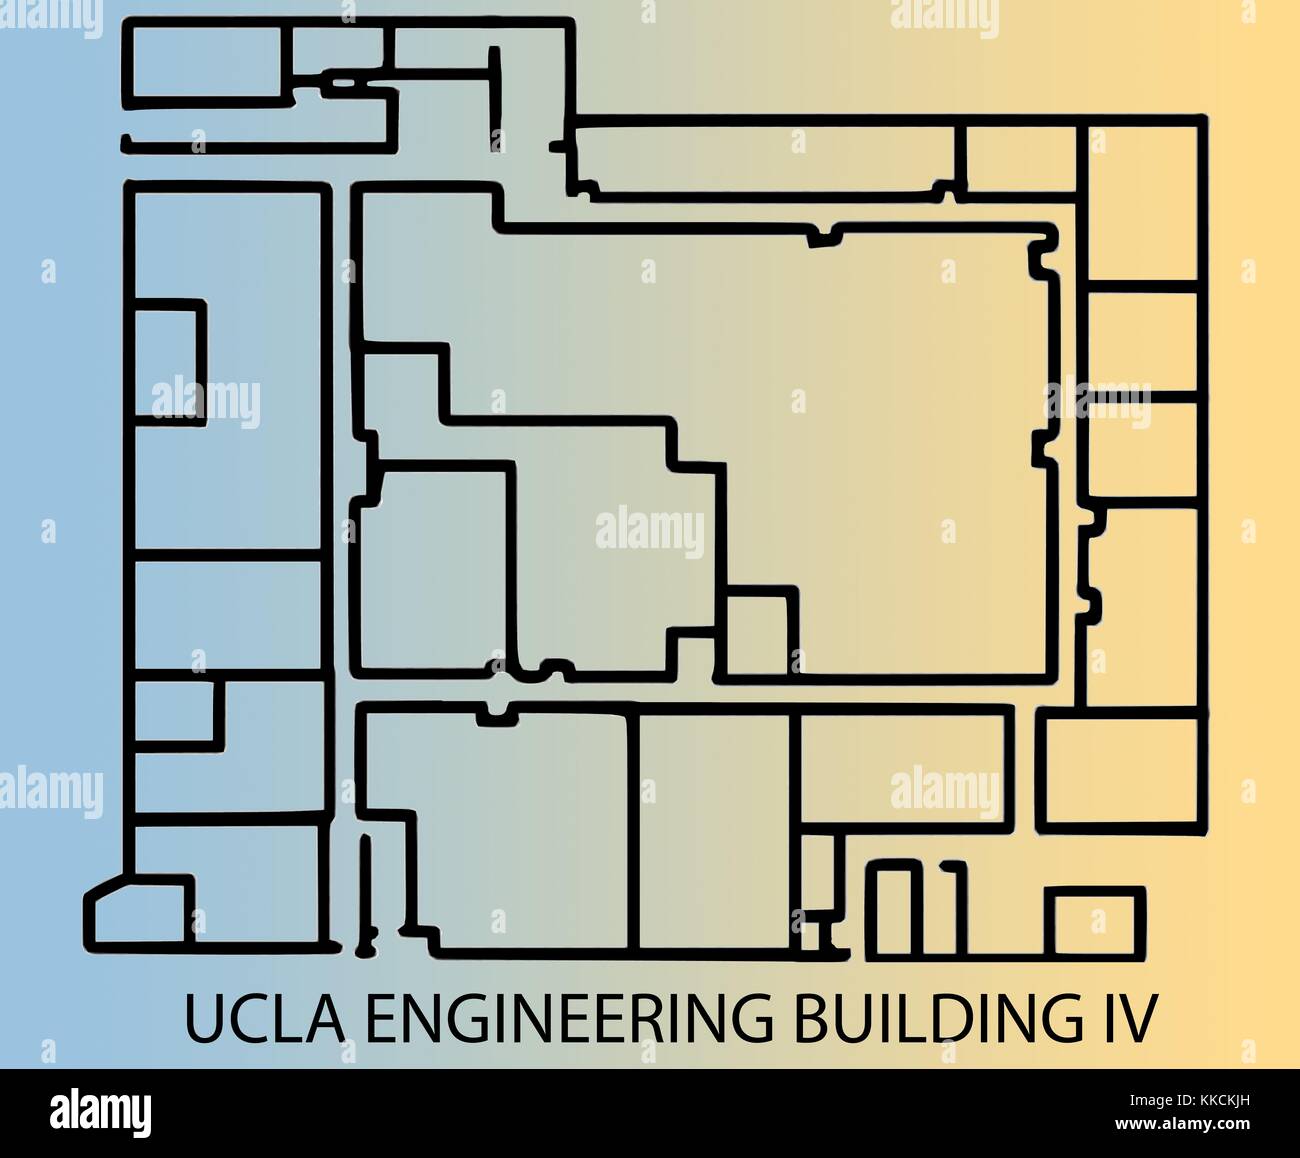 Floorplan para ingeniería edificio IV en el campus de la Universidad de California en Los Ángeles (UCLA), sitio de presunto ataque contra el profesor William klug por estudiante mainak sarkar. deriva de una imagen histórica; posición de características y magnitud no exactos. 2016. Foto de stock